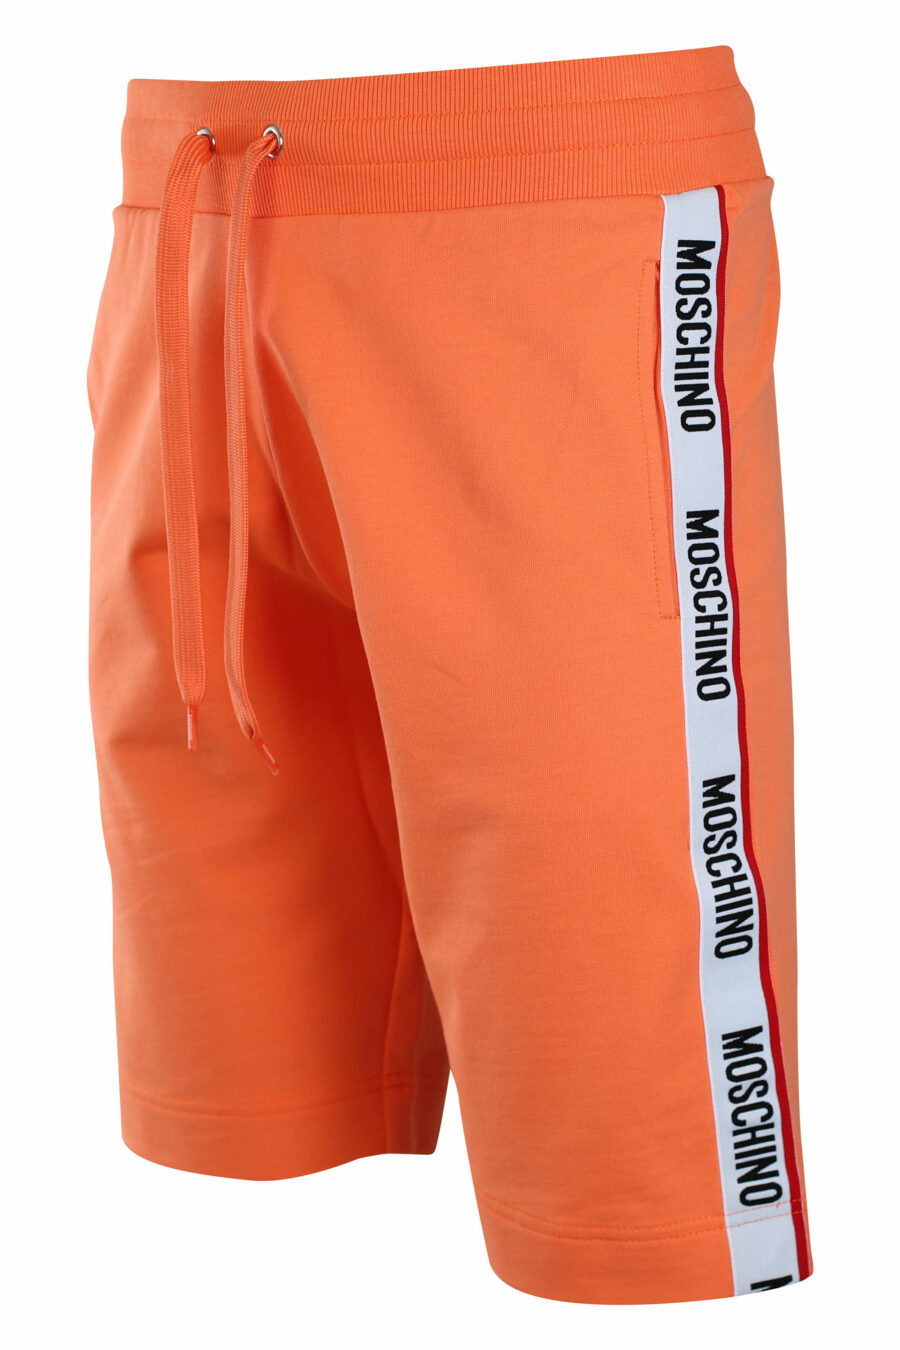 Pantalón de chándal corto naranja con logo en banda laterales - IMG 2210